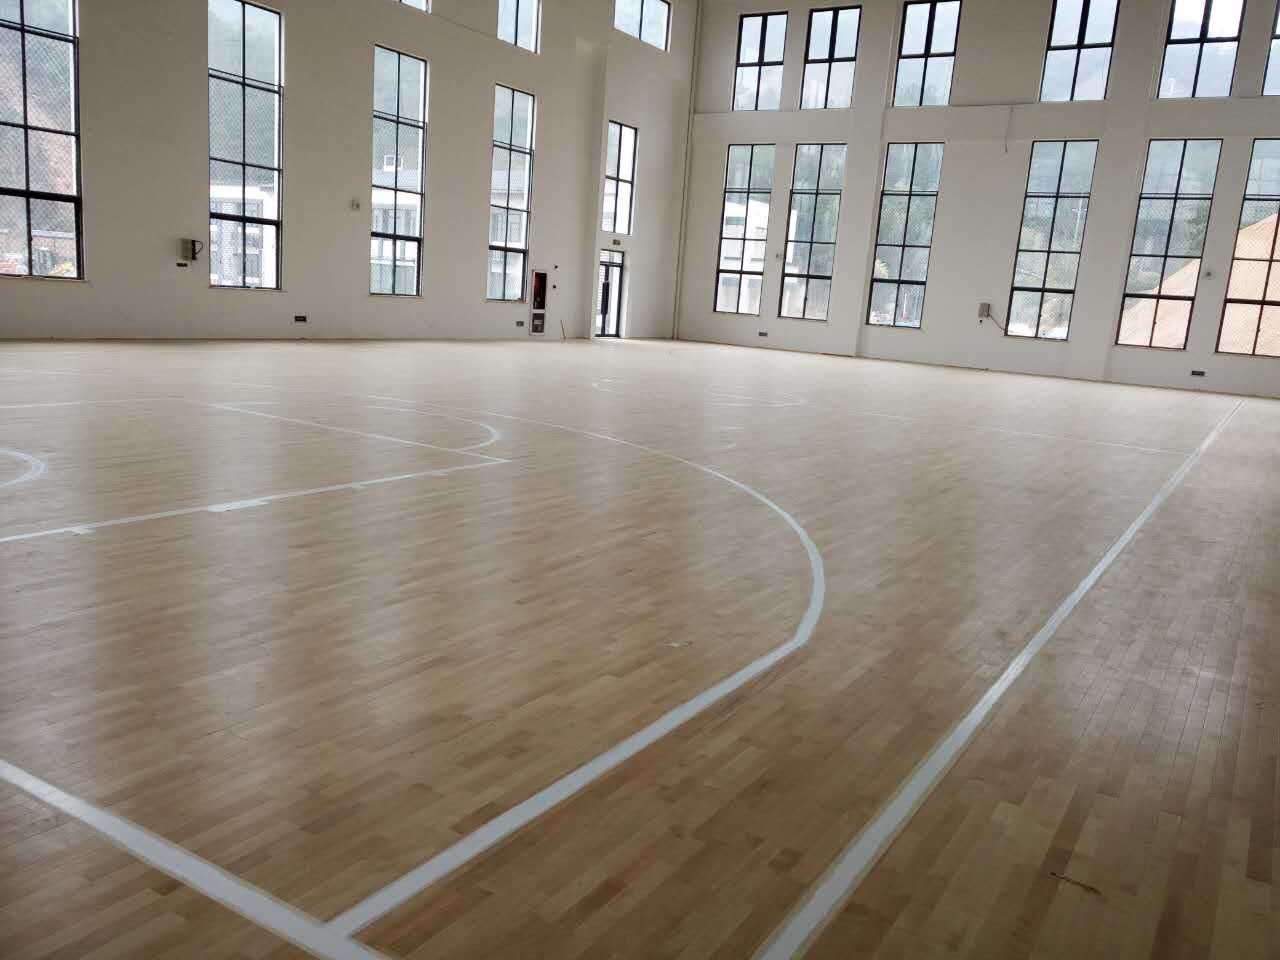 安徽宣城绩溪伏岭**蓄能电站篮球木地板铺设工程